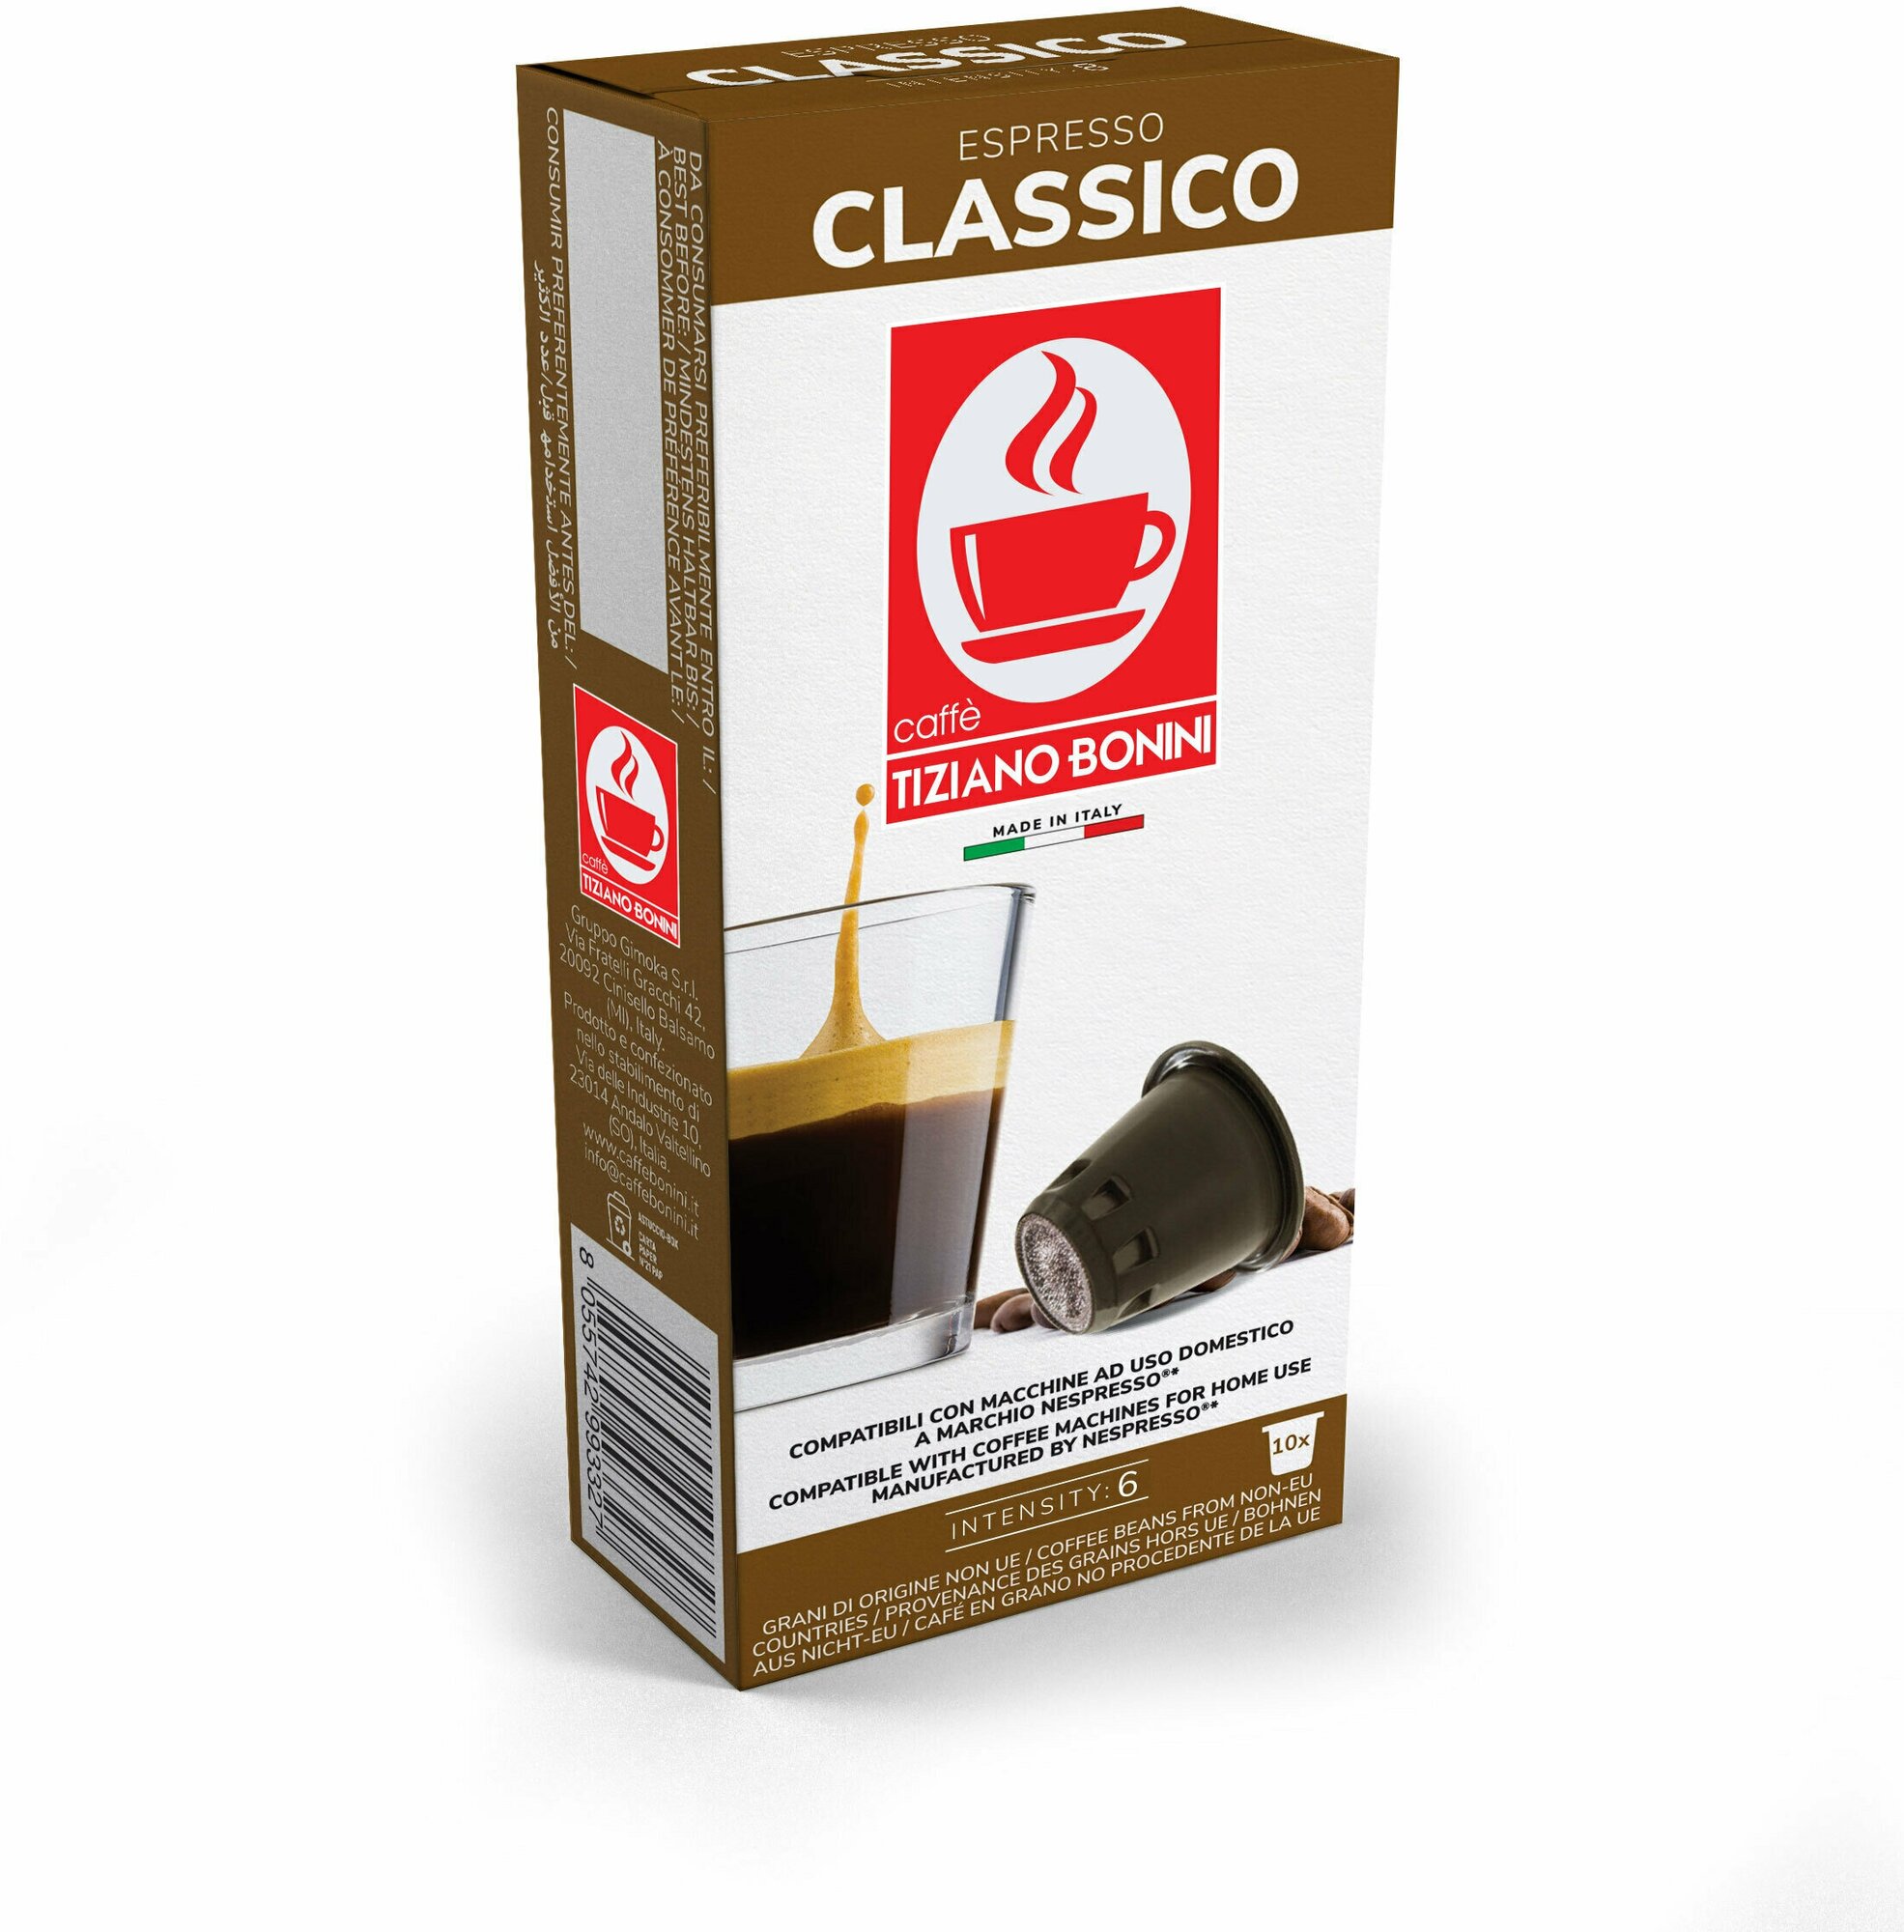 Итальянский кофе в капсулах Caffe Tiziano Bonini nes Classico 10шт по 5,5г